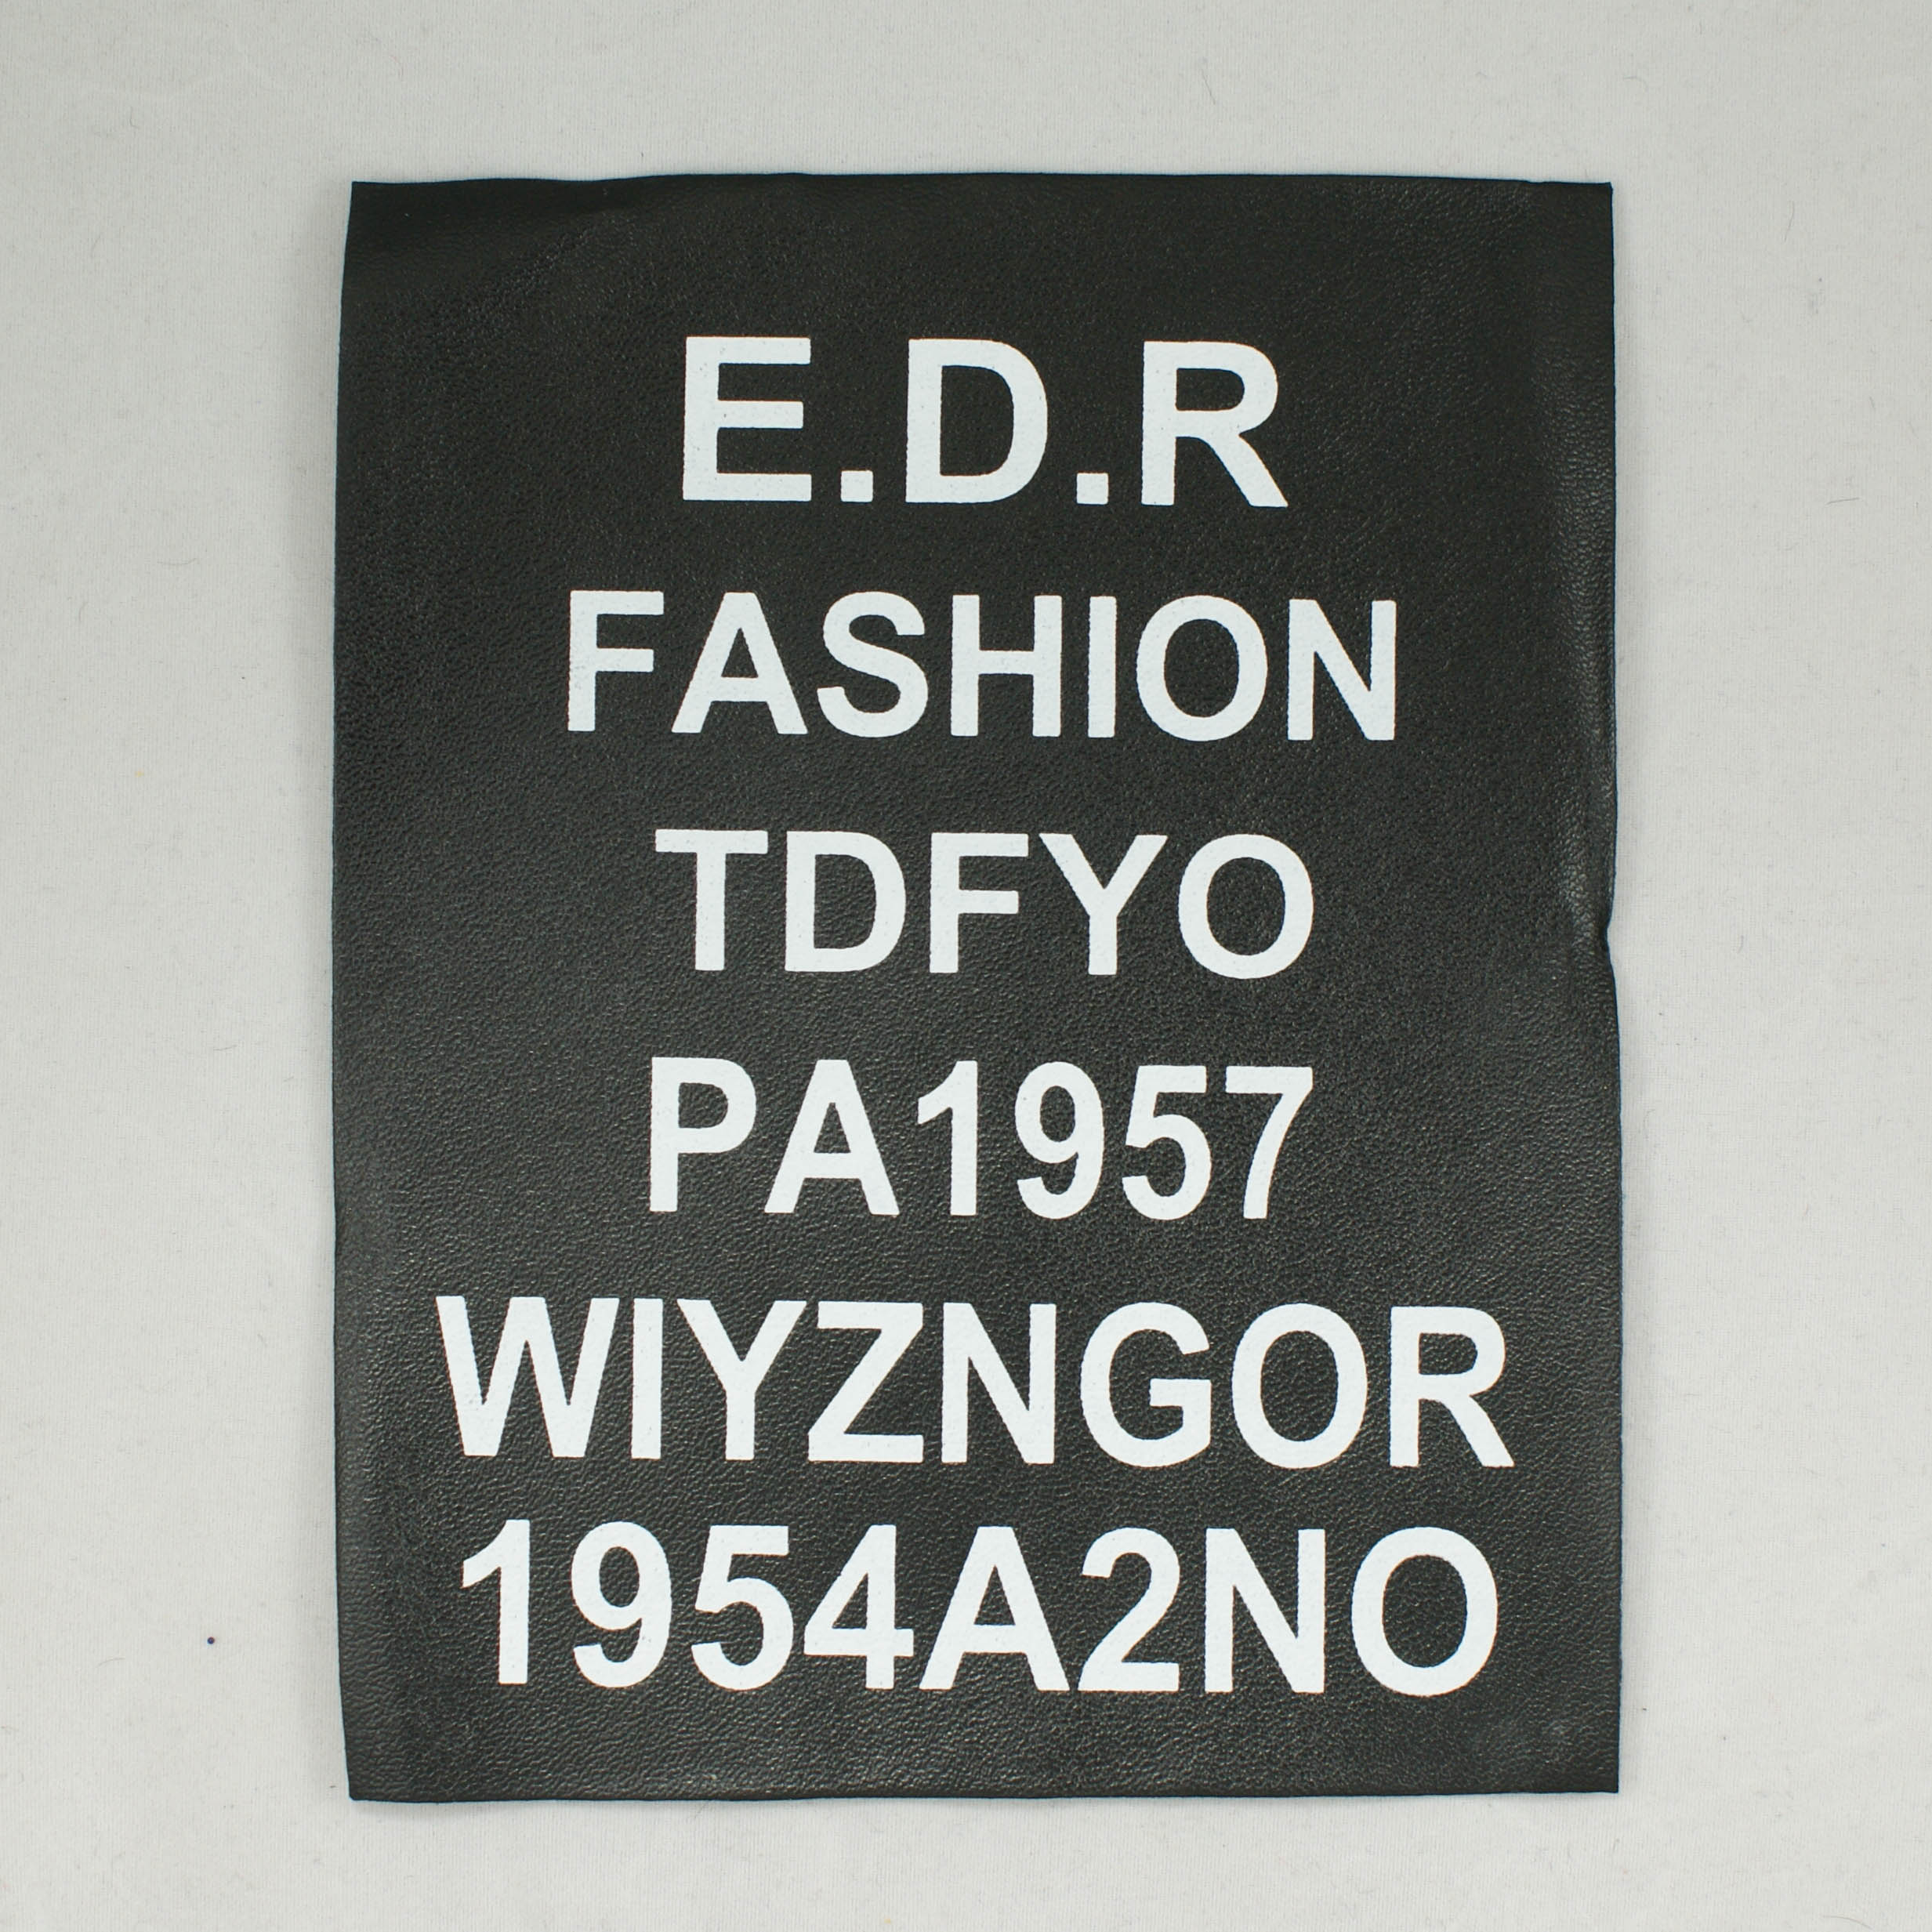 Аппликация кожзам пришивная постер E.D.R FASHION, 11*14см, черный фон, белые буквы, шт. Нашивка Кожзам